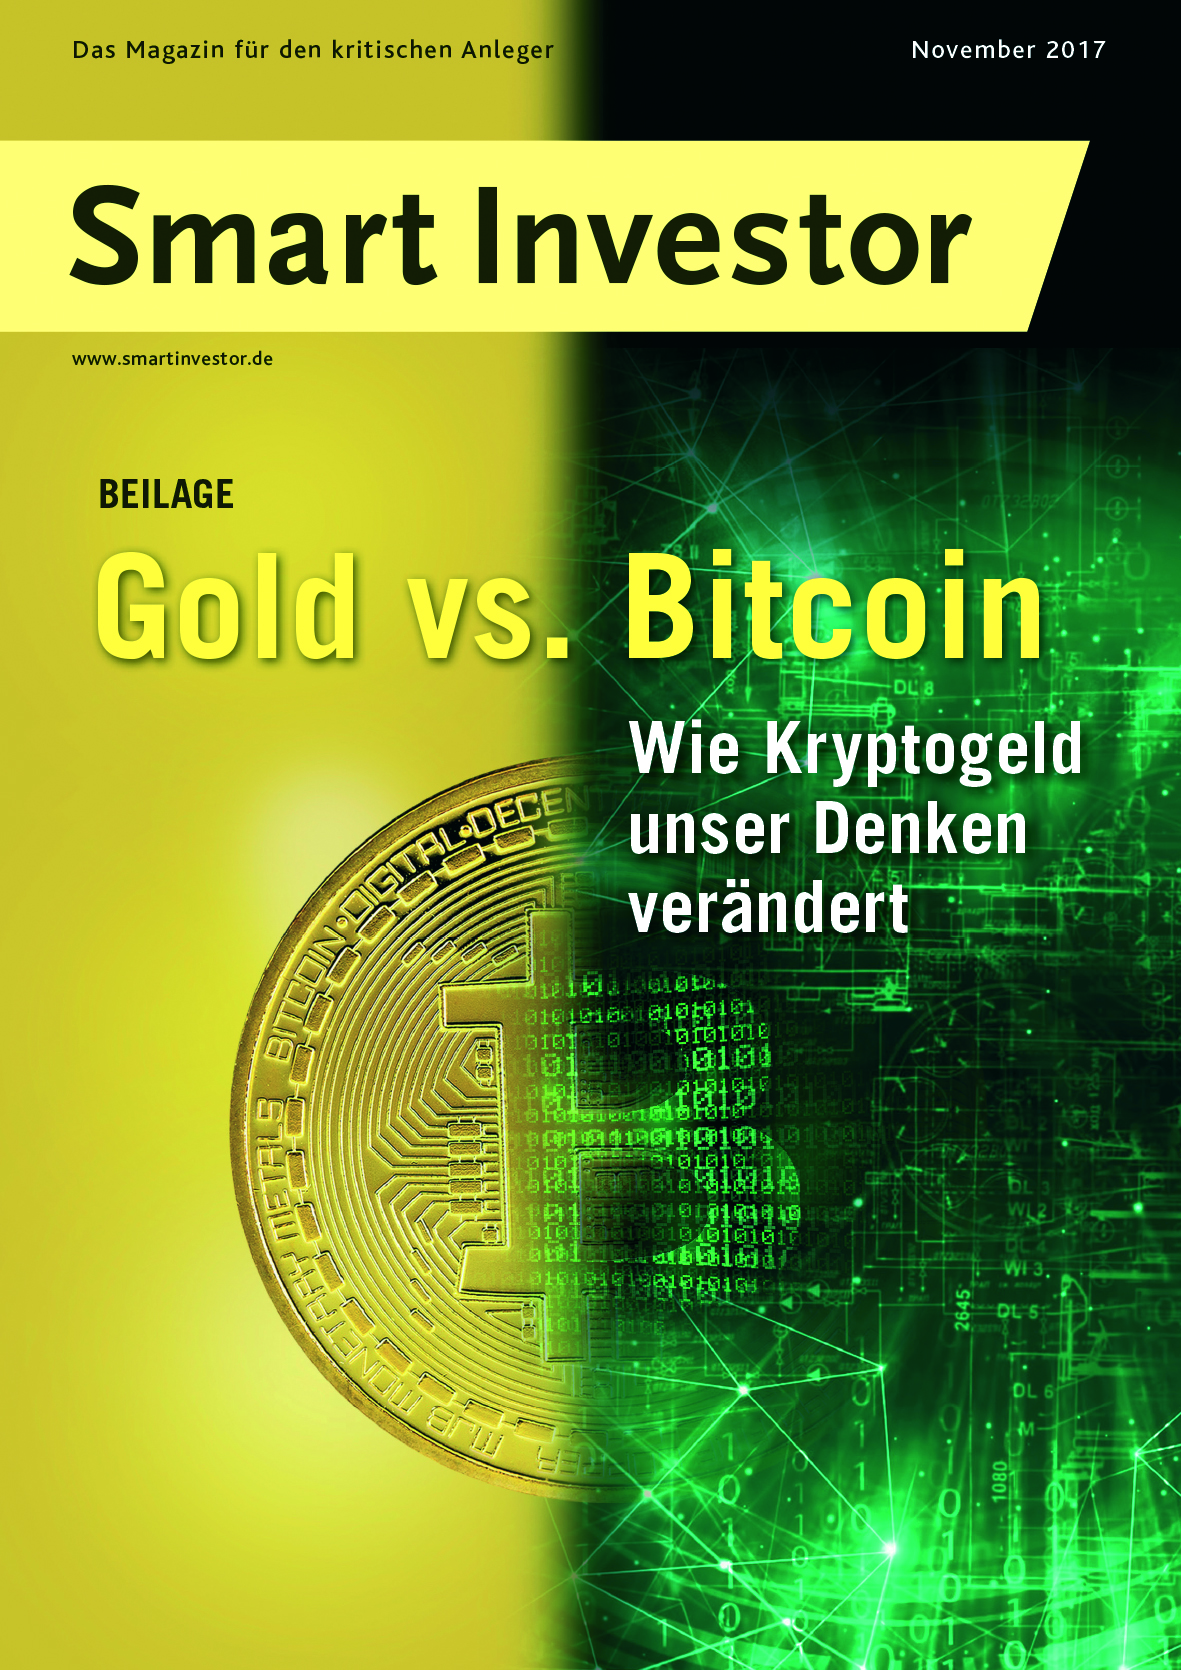 Mehr über den Artikel erfahren Smart Investor 11/2017 –  Beilage „Gold vs. Bitcoin“